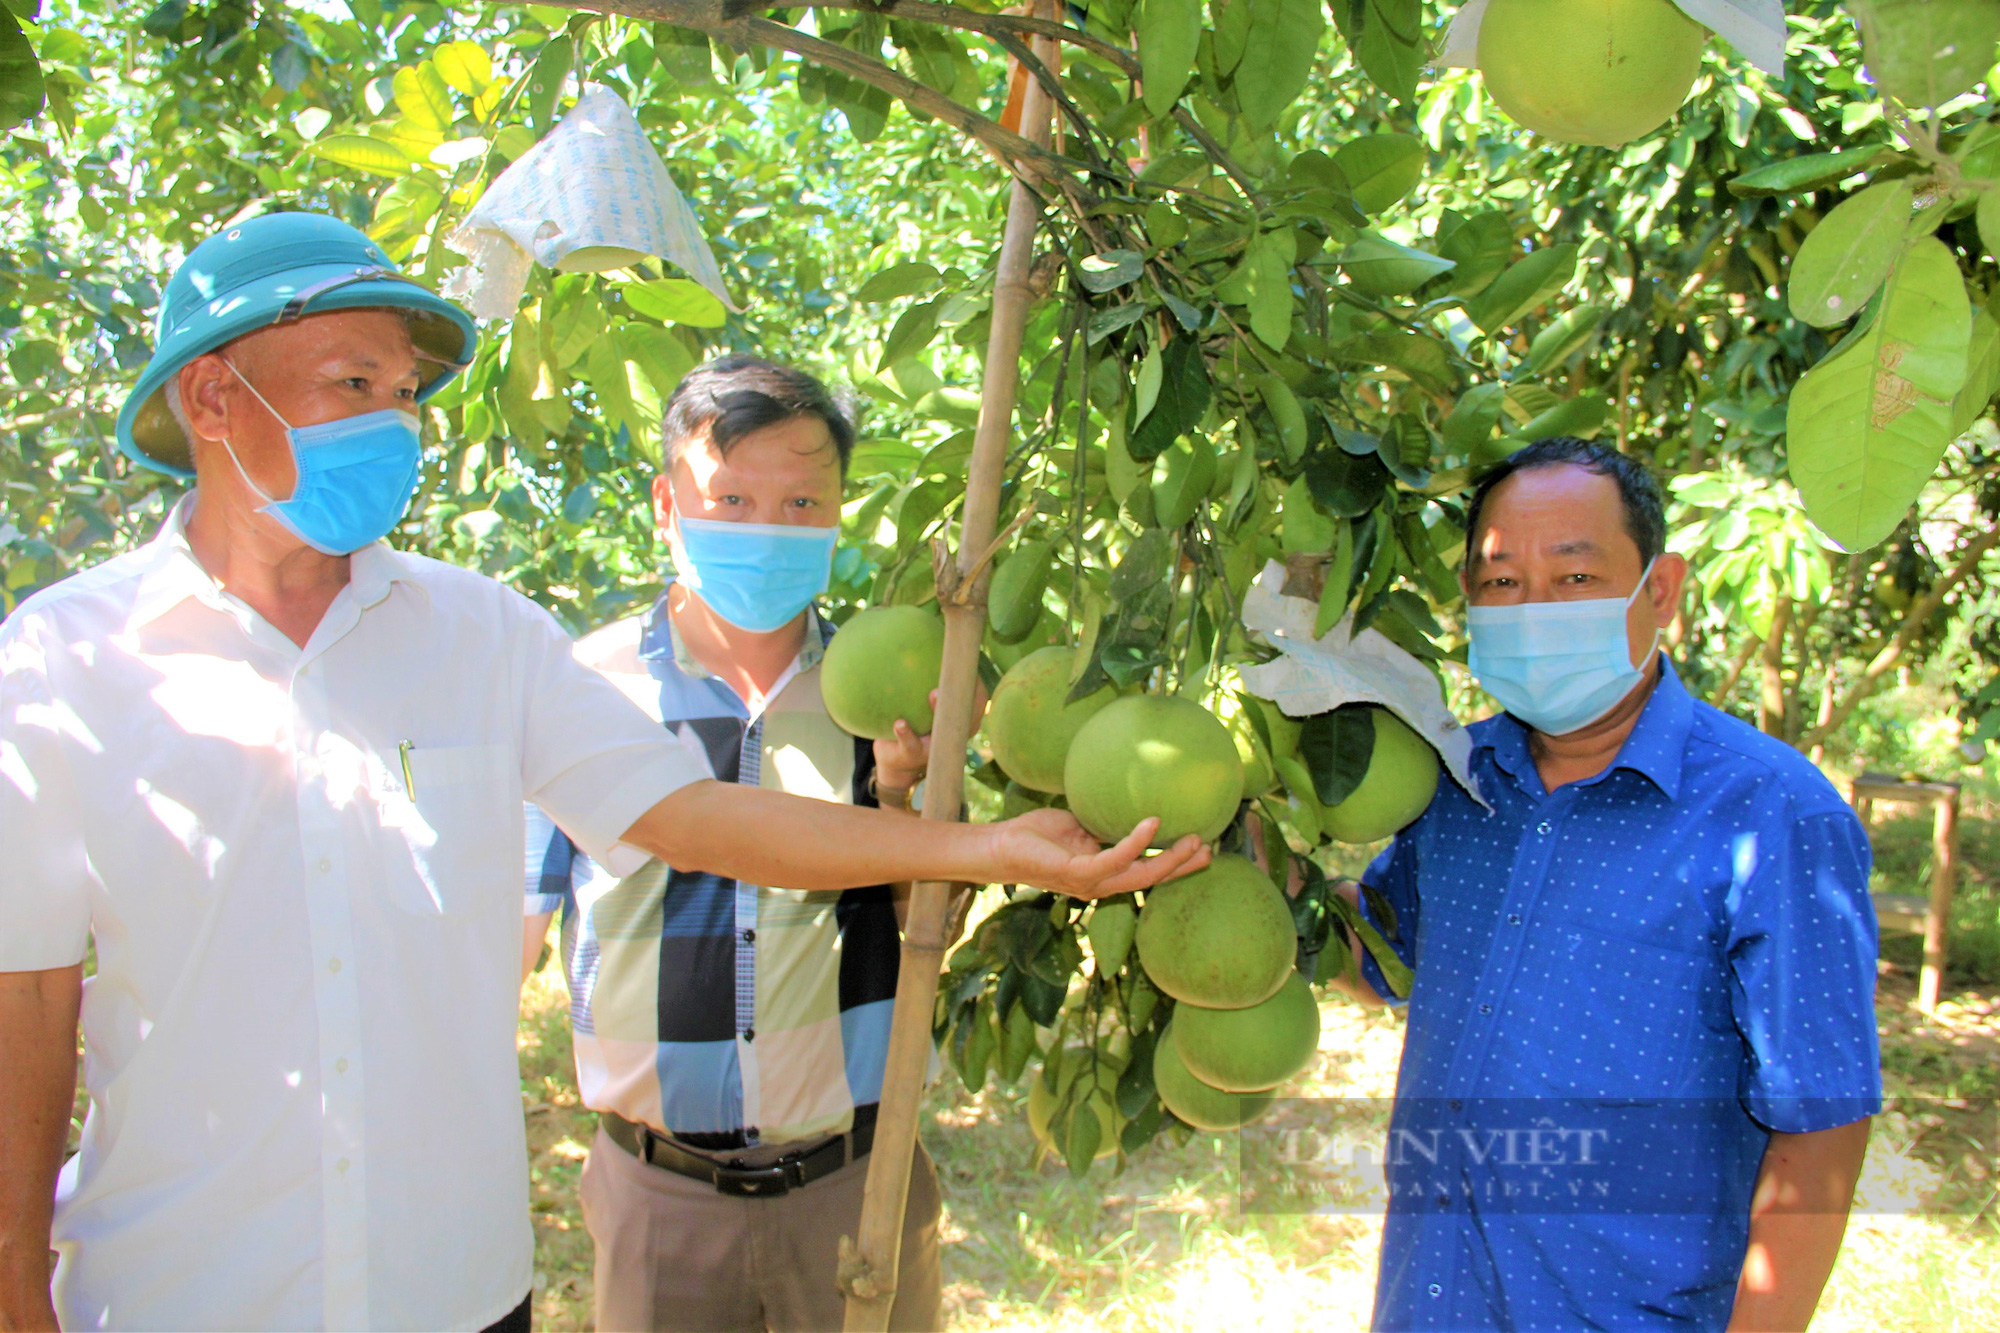 Hà Tĩnh: Phối hợp hỗ trợ nông dân chuyển đổi số trong sản xuất và tiêu thụ nông sản, hàng hóa - Ảnh 2.